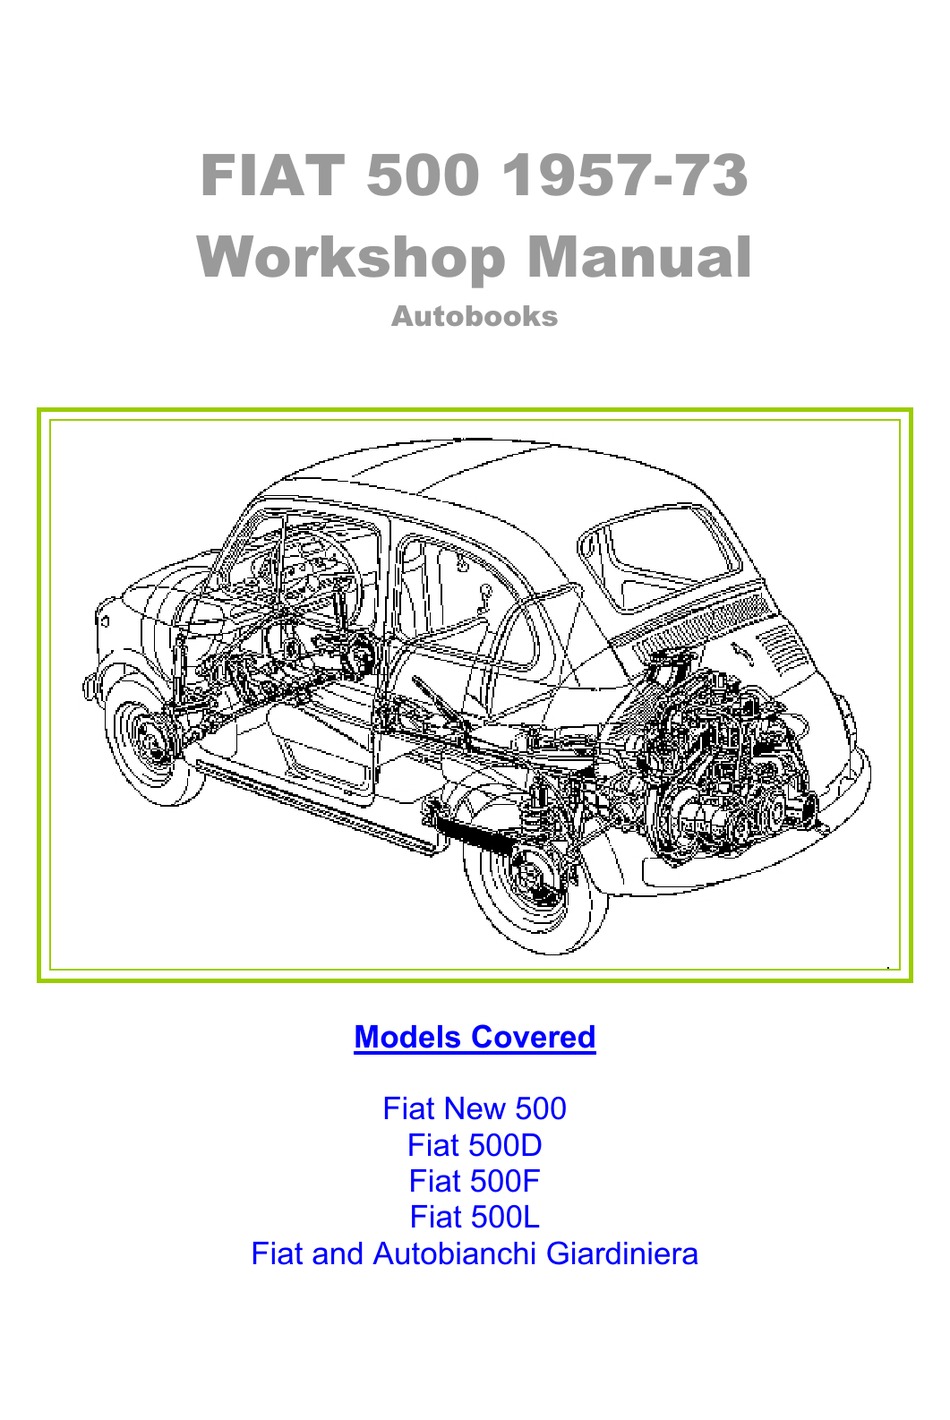 Fiat 500l Workshop Manual Pdf Download Manualslib